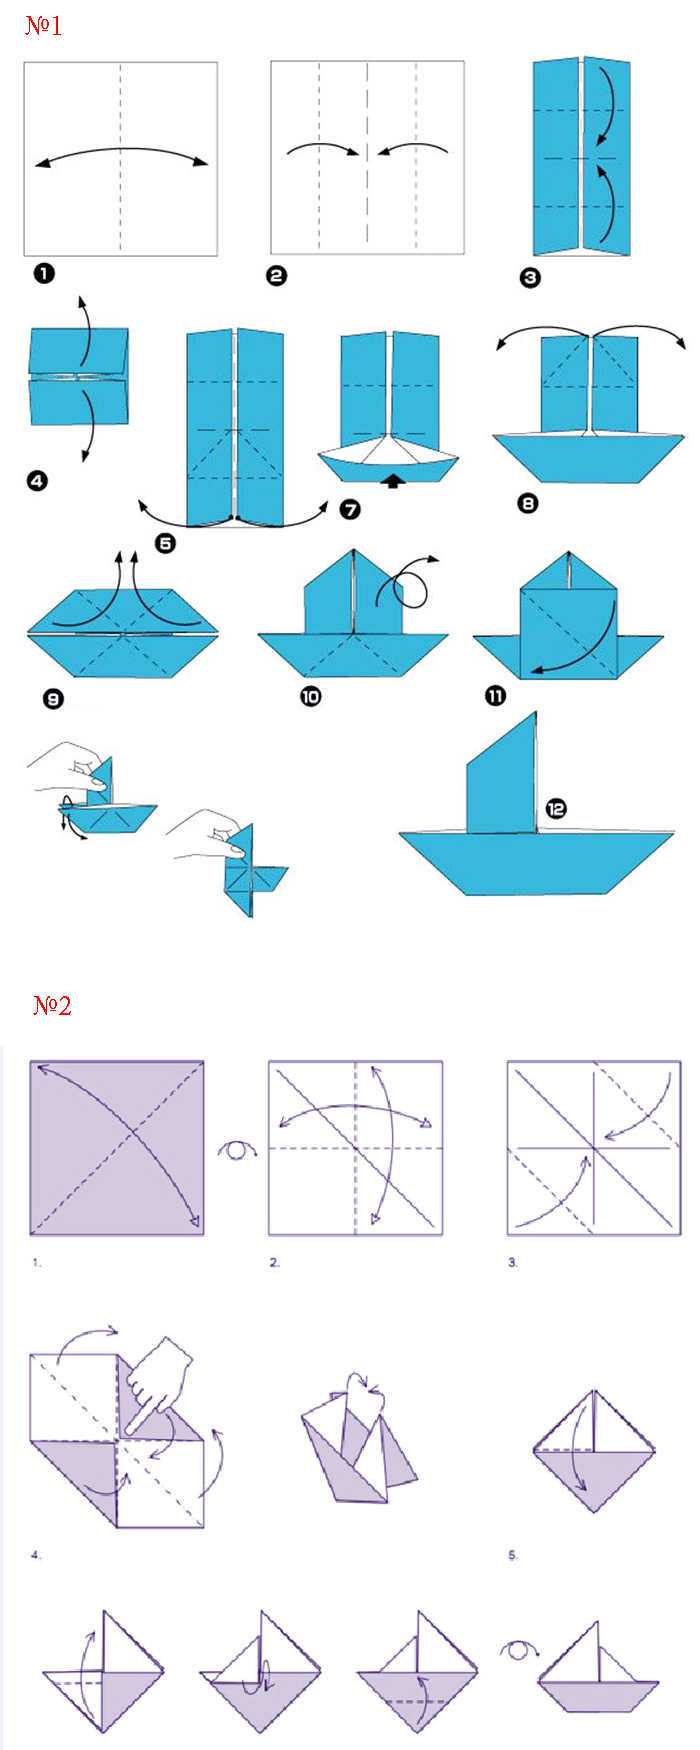 Пароход и кораблики - поделки из бумаги и подручных материалов - коробочка идей и мастер-классов